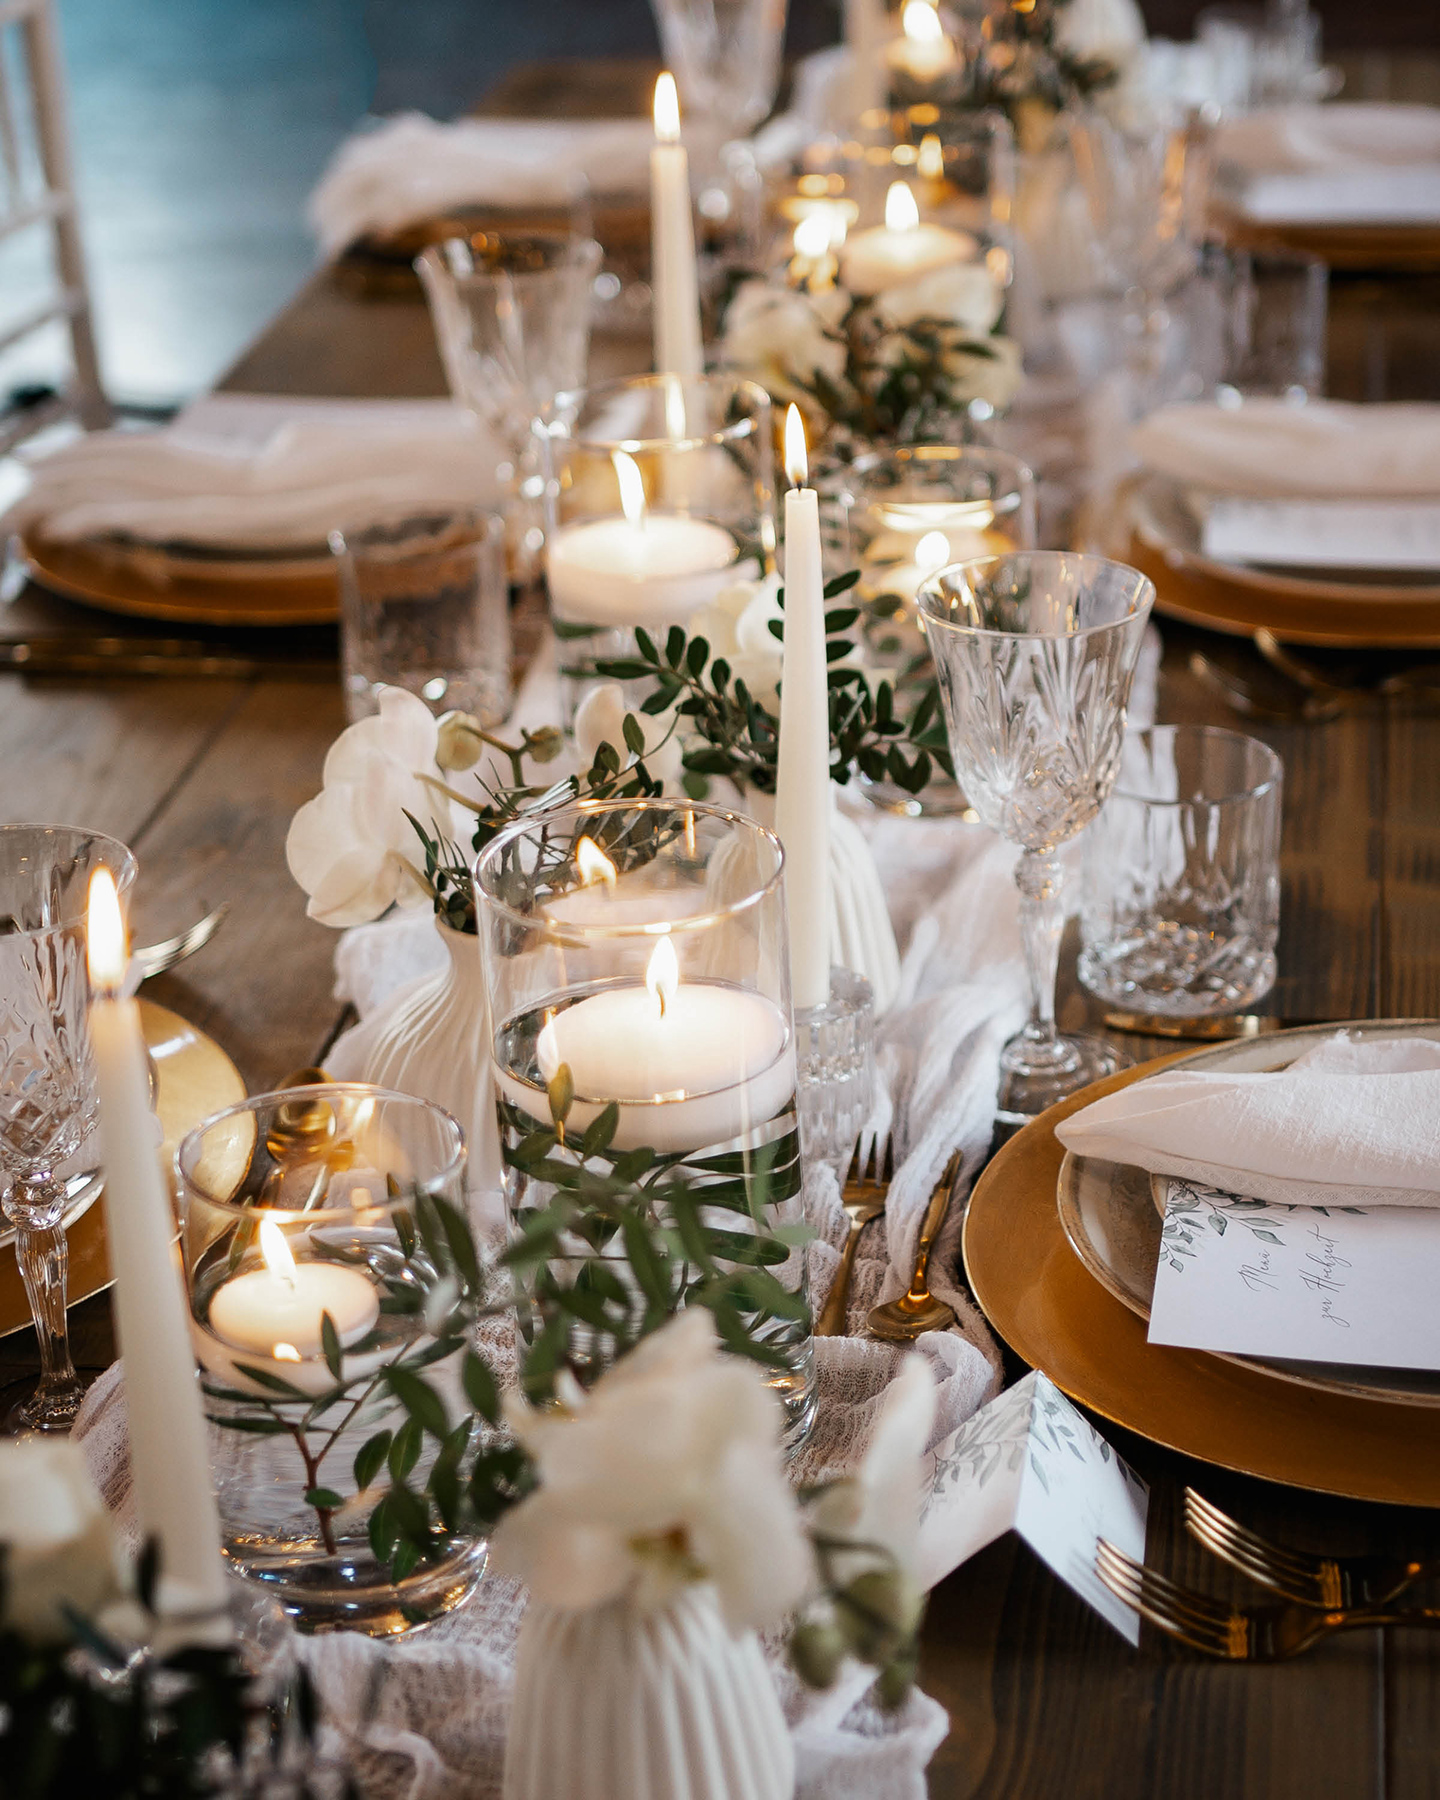  Festlich gedeckte Hochzeitstafel mit weißen Kerzen, hellen Stoffen und weißen und grünen foralen Akzenten.